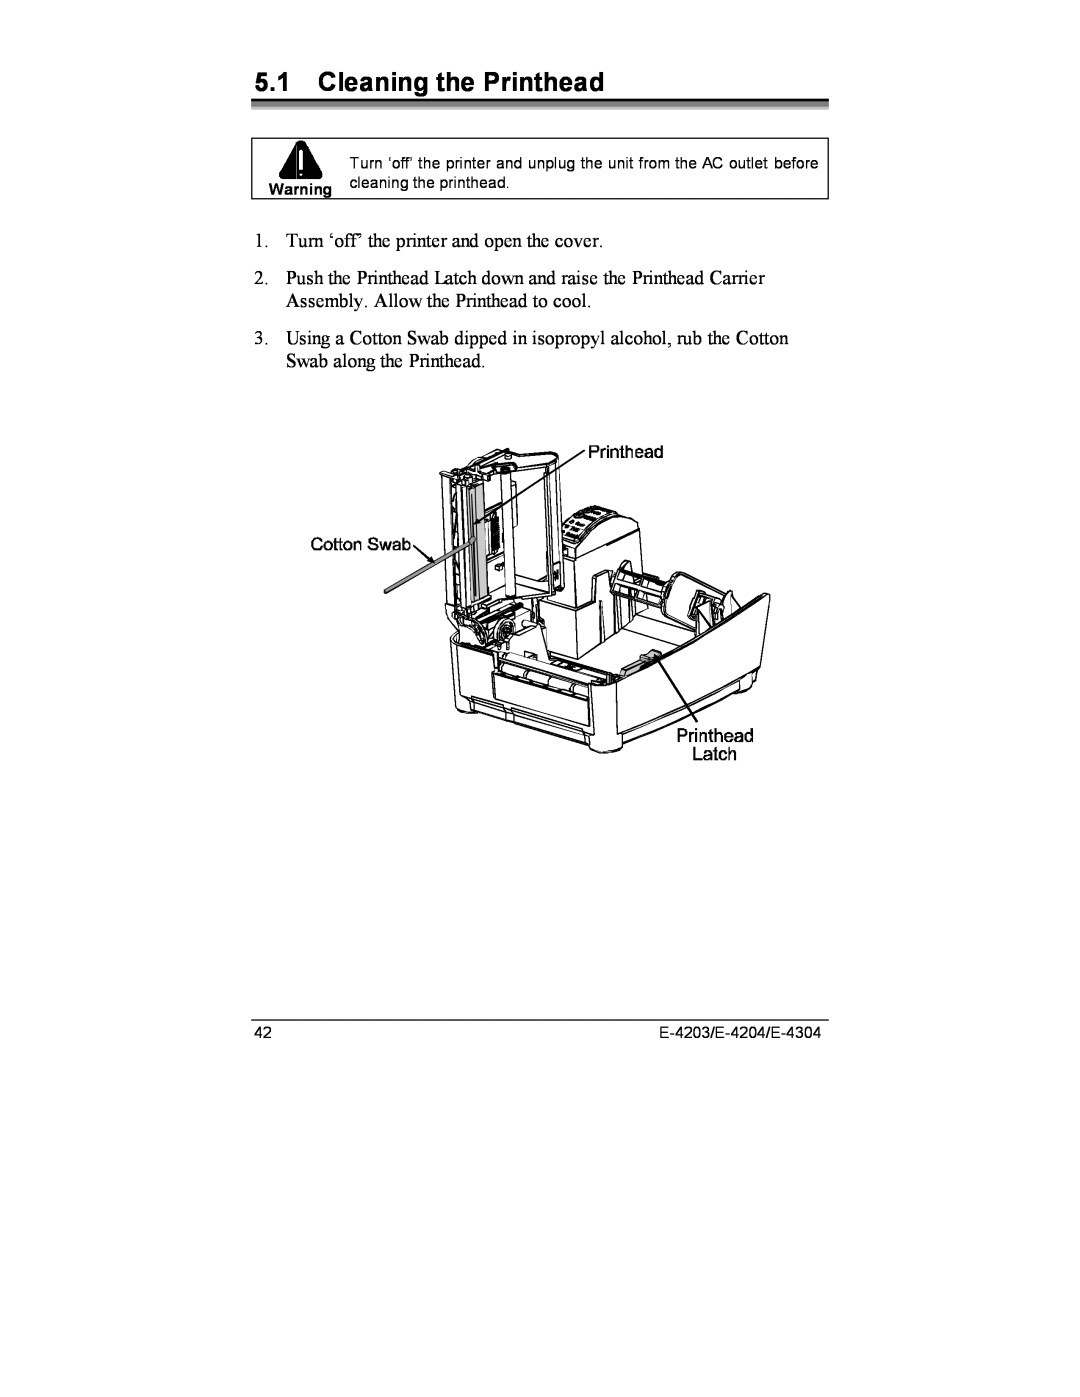 Datamax E-4204, E-4203, E-4304e manual Cleaning the Printhead 